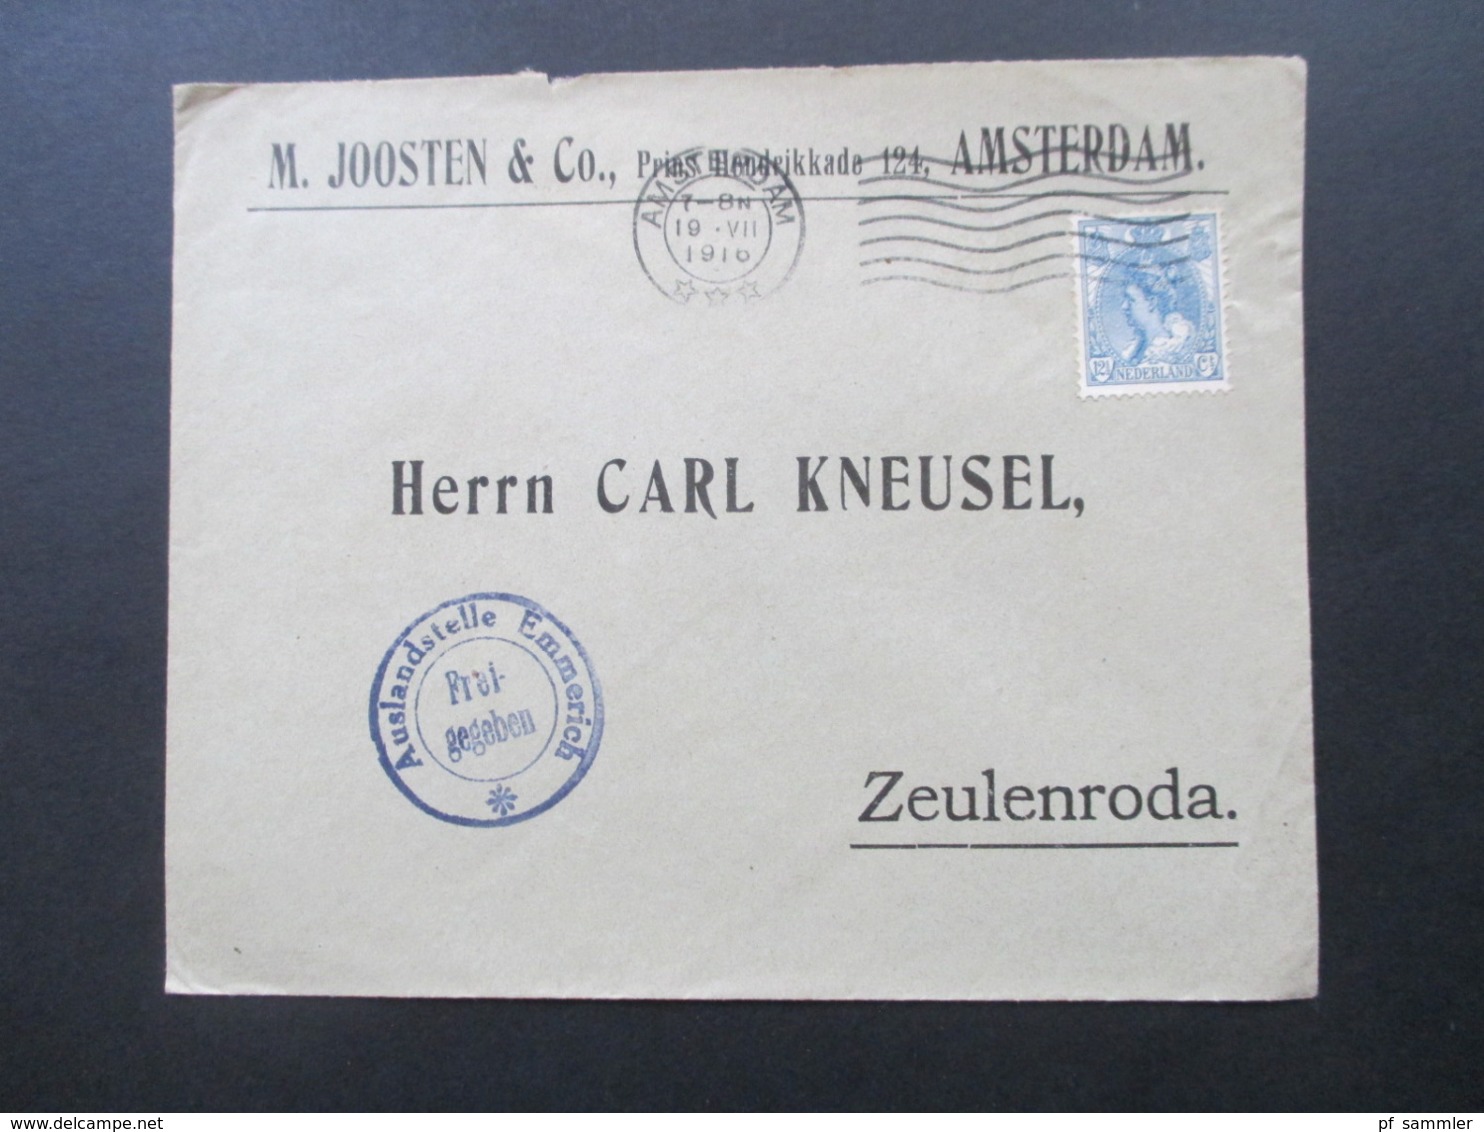 1916 10 Auslandsbelege M. Joosten Amsterdam - Zeulenroda alle mit Zensurstempel Auslandsstelle Emmerich Freigegeben